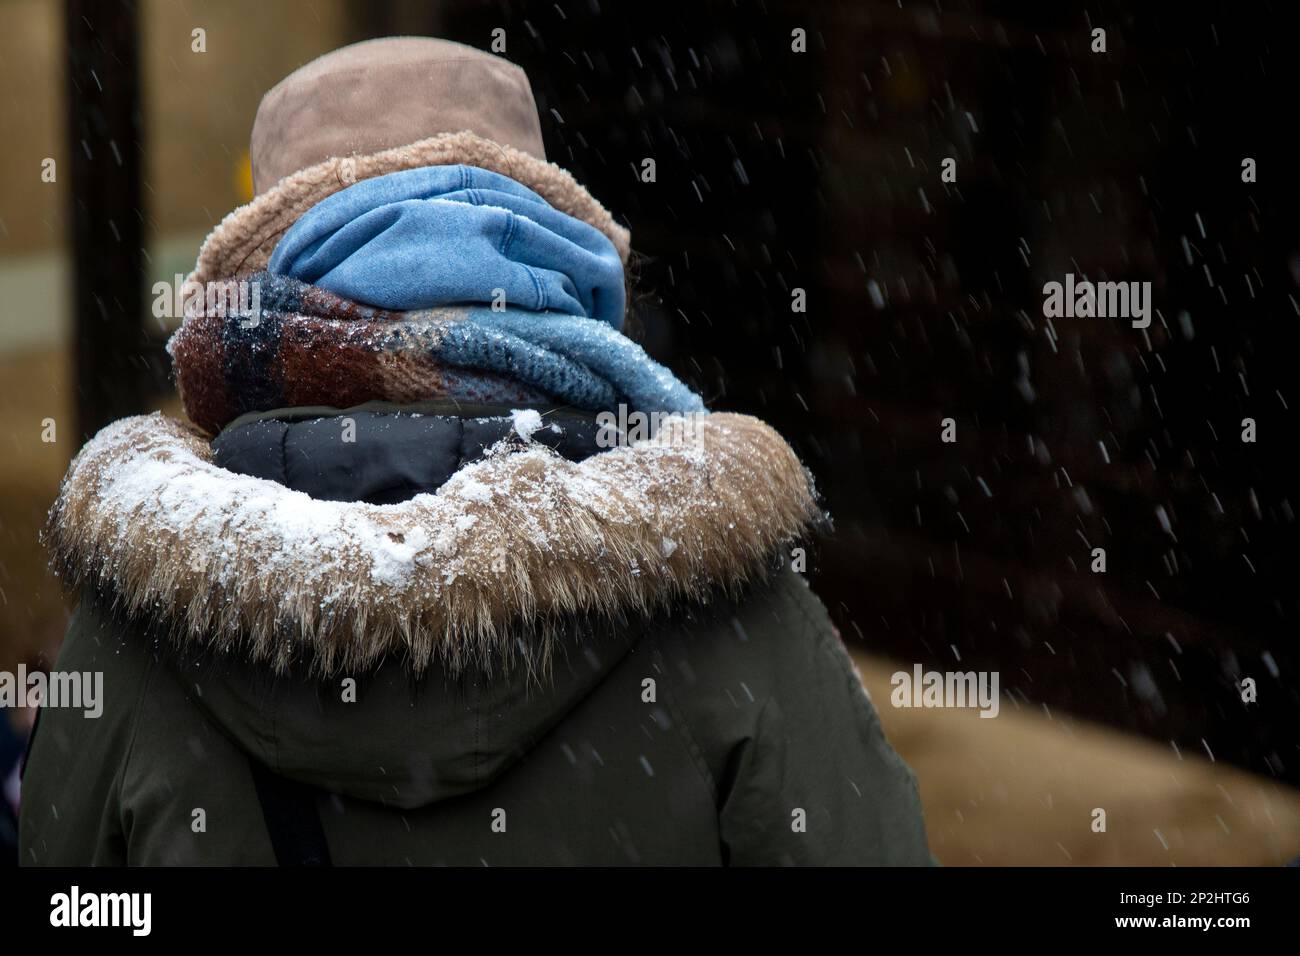 Une fille descend une rue enveloppée de foulards jusqu'à une station de métro dans le froid, le temps a chuté à Moscou, en Russie Banque D'Images